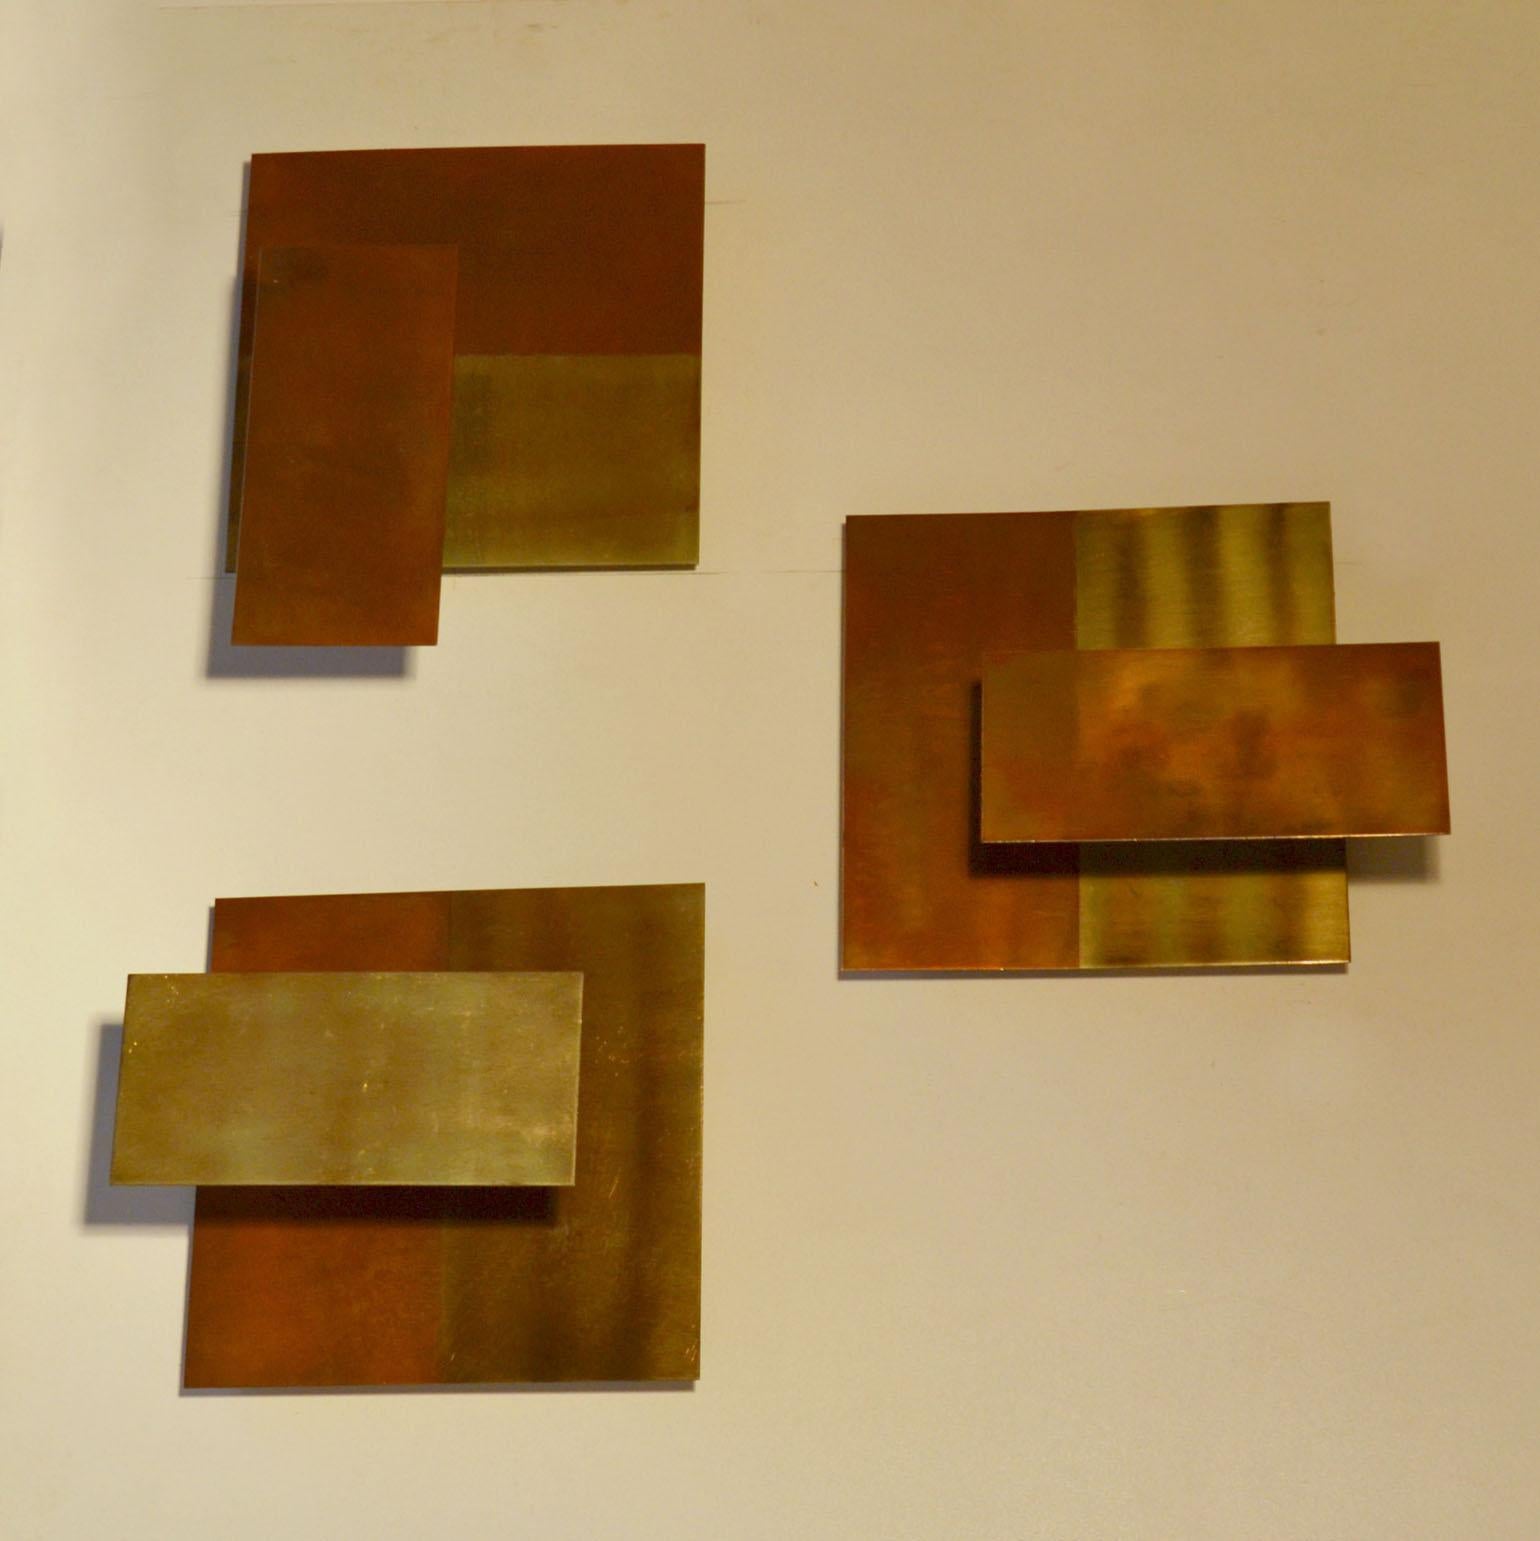 Drei geometrische, minimale Wandskulpturen, die als Kerzenhalter dienen. Die Oberflächenpatina ist Teil der Komposition. Sie können in beliebiger Reihenfolge angebracht werden und lassen sich leicht an jeweils zwei Haken befestigen.
Als Kerzen